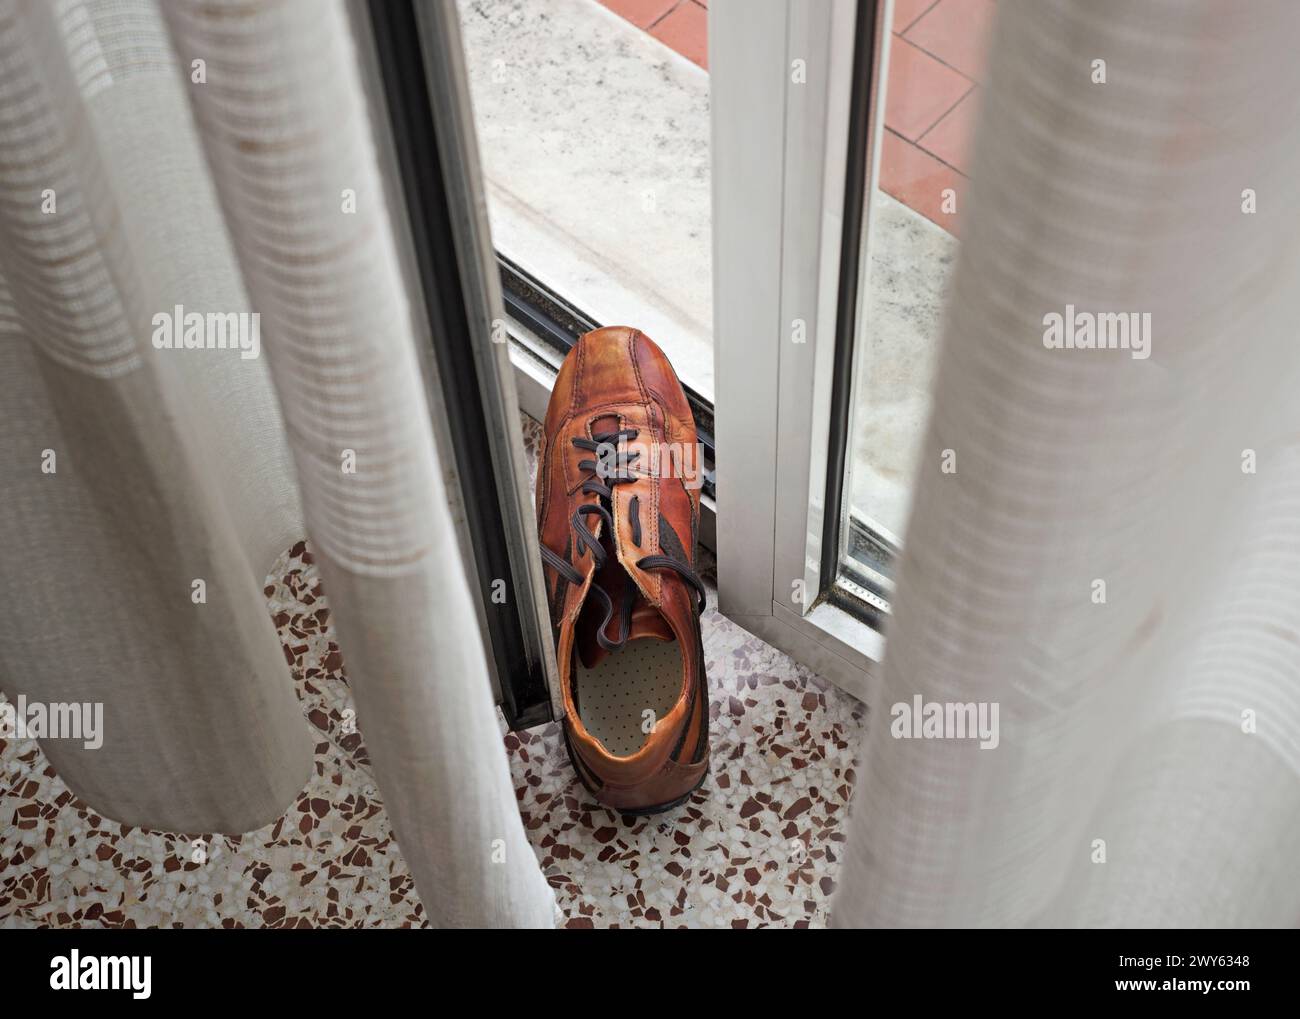 la scarpa da uomo tiene la porta aperta per far entrare aria fresca Foto Stock